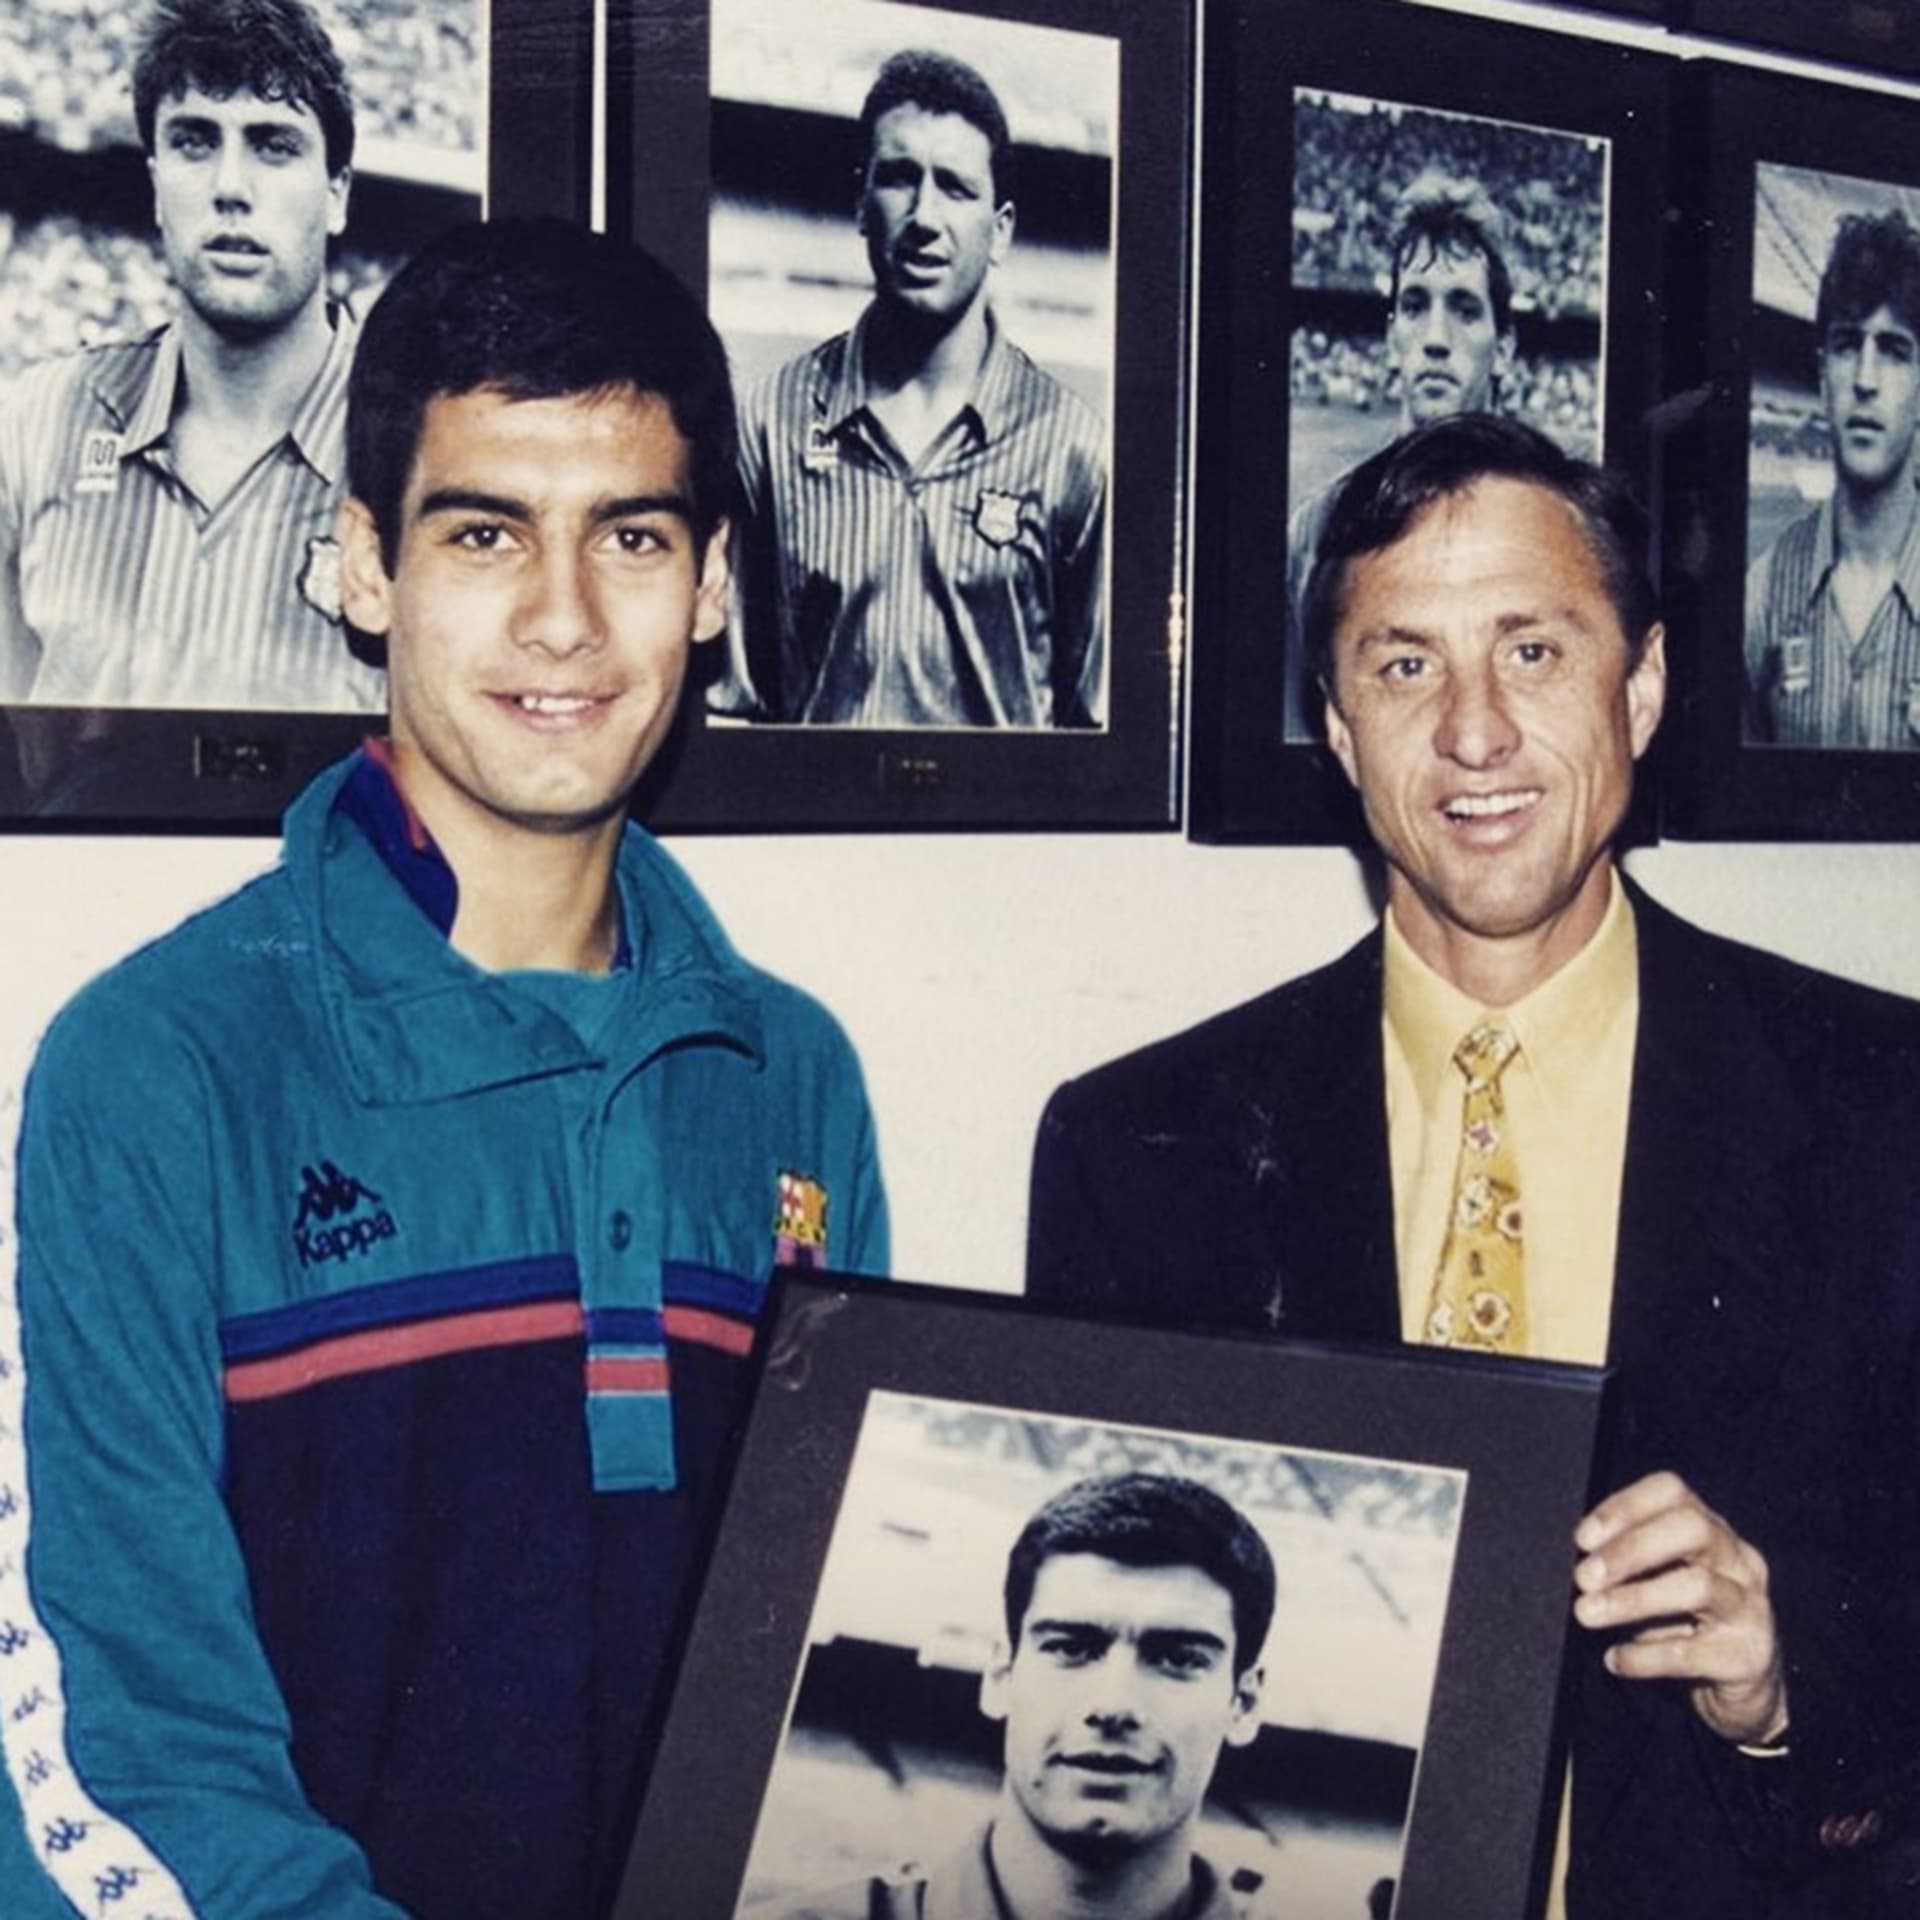 Vedle Johana Cruyffa (na společném snímku) a několika dalších patří Guardiola do úzké elitní skupiny vítězů Champions League či PMEZ z pozice hráče i trenéra.